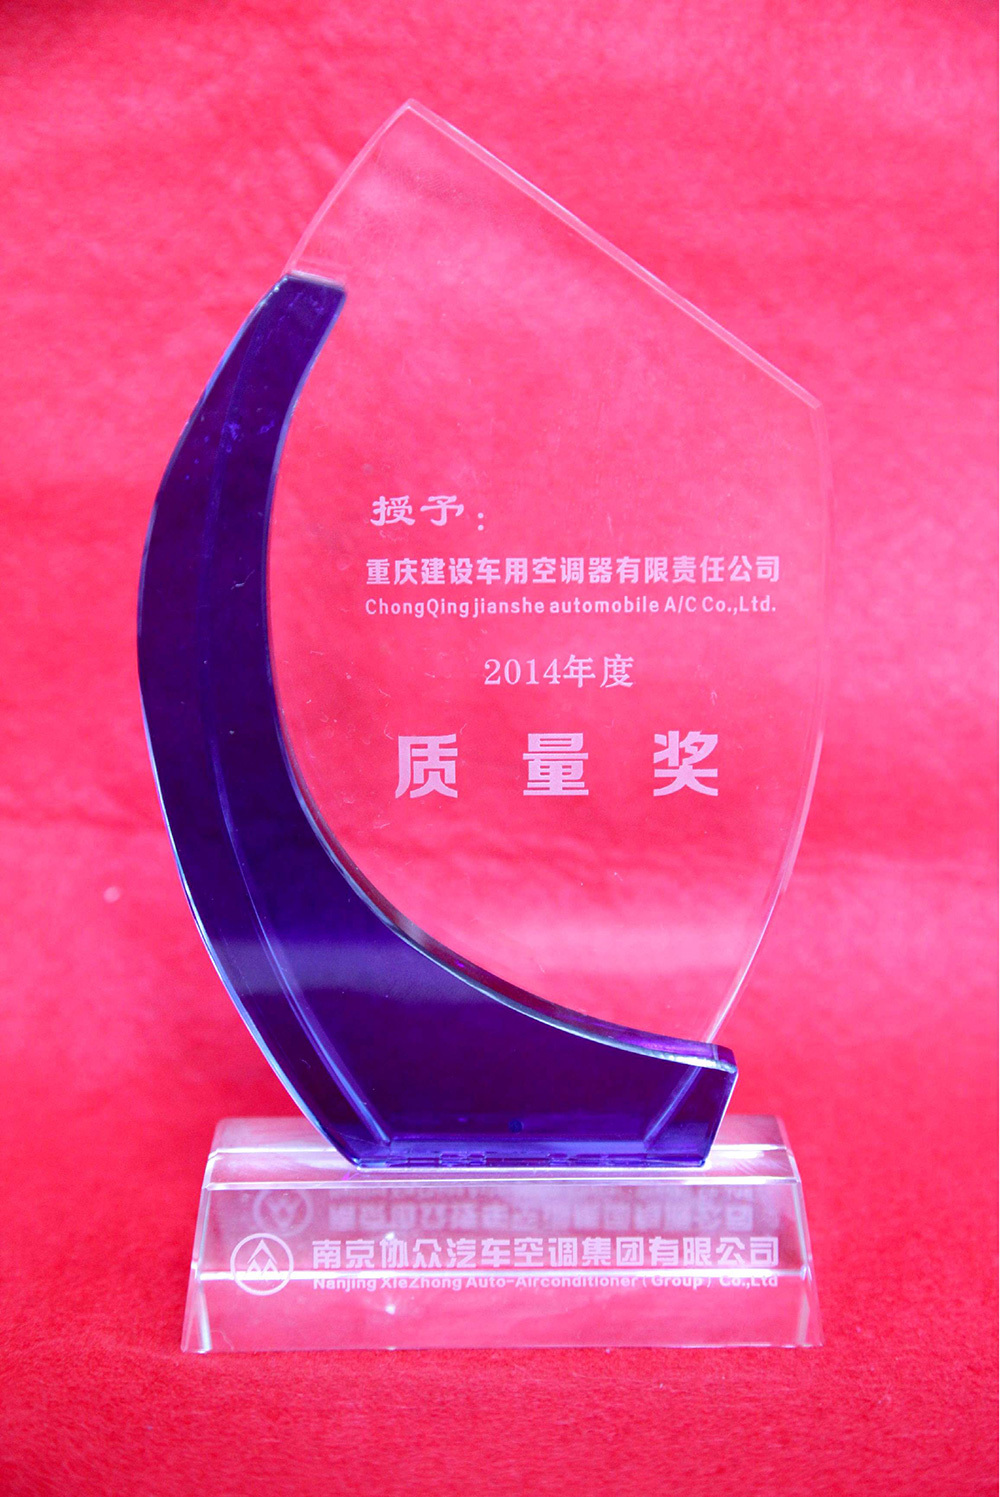 2014年度质量奖